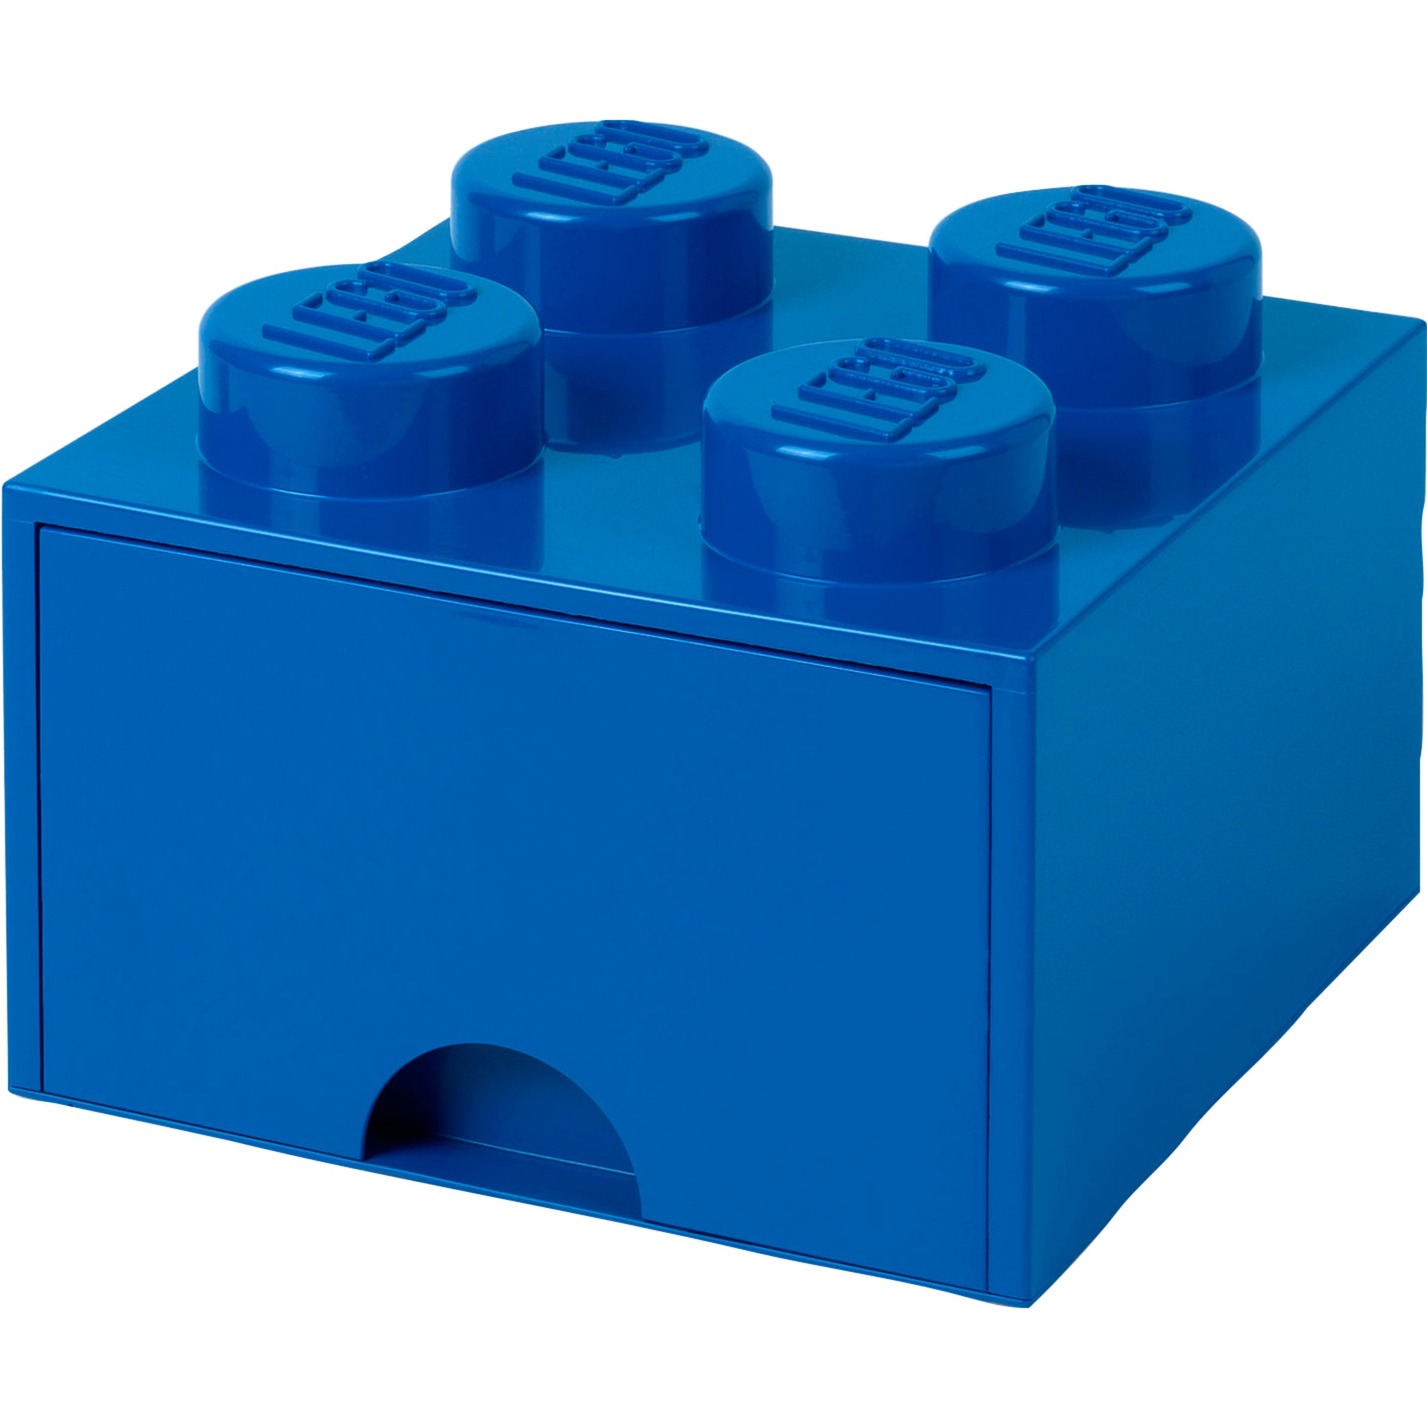 Image of Alternate - LEGO Brick Drawer 4 blau, Aufbewahrungsbox online einkaufen bei Alternate